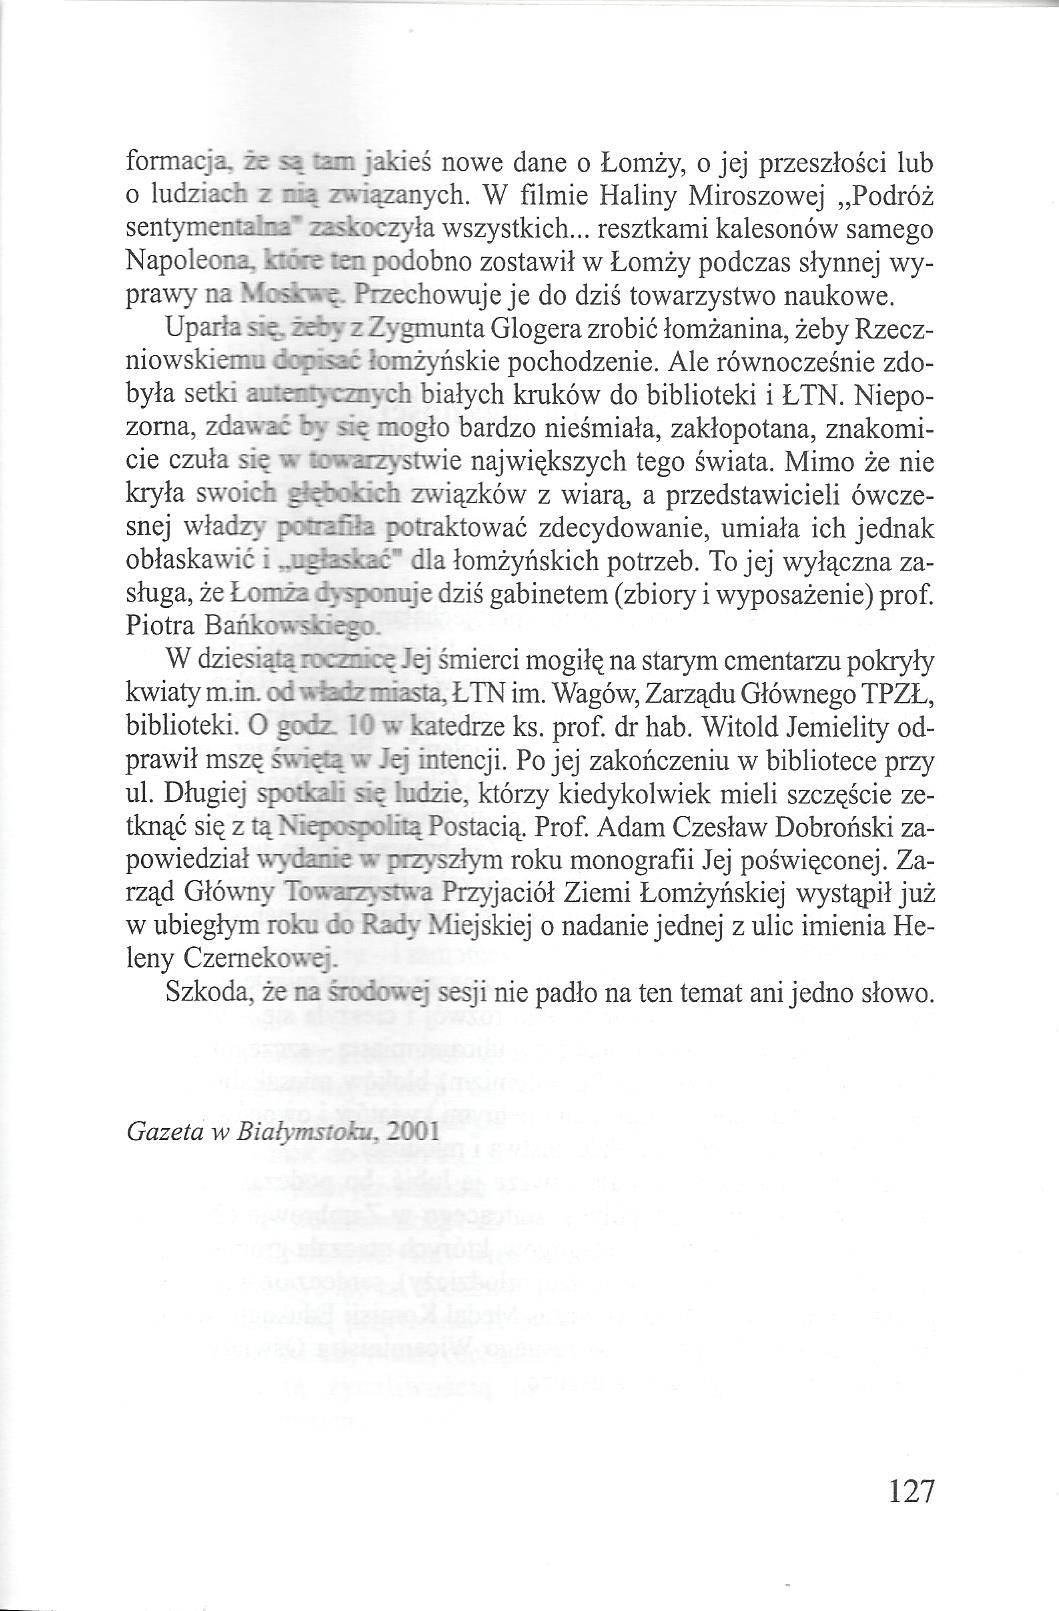 31. Janusz Gwardiak – „Pasjonatka Ziemi Łomżyńskiej”, Łomża 2002.